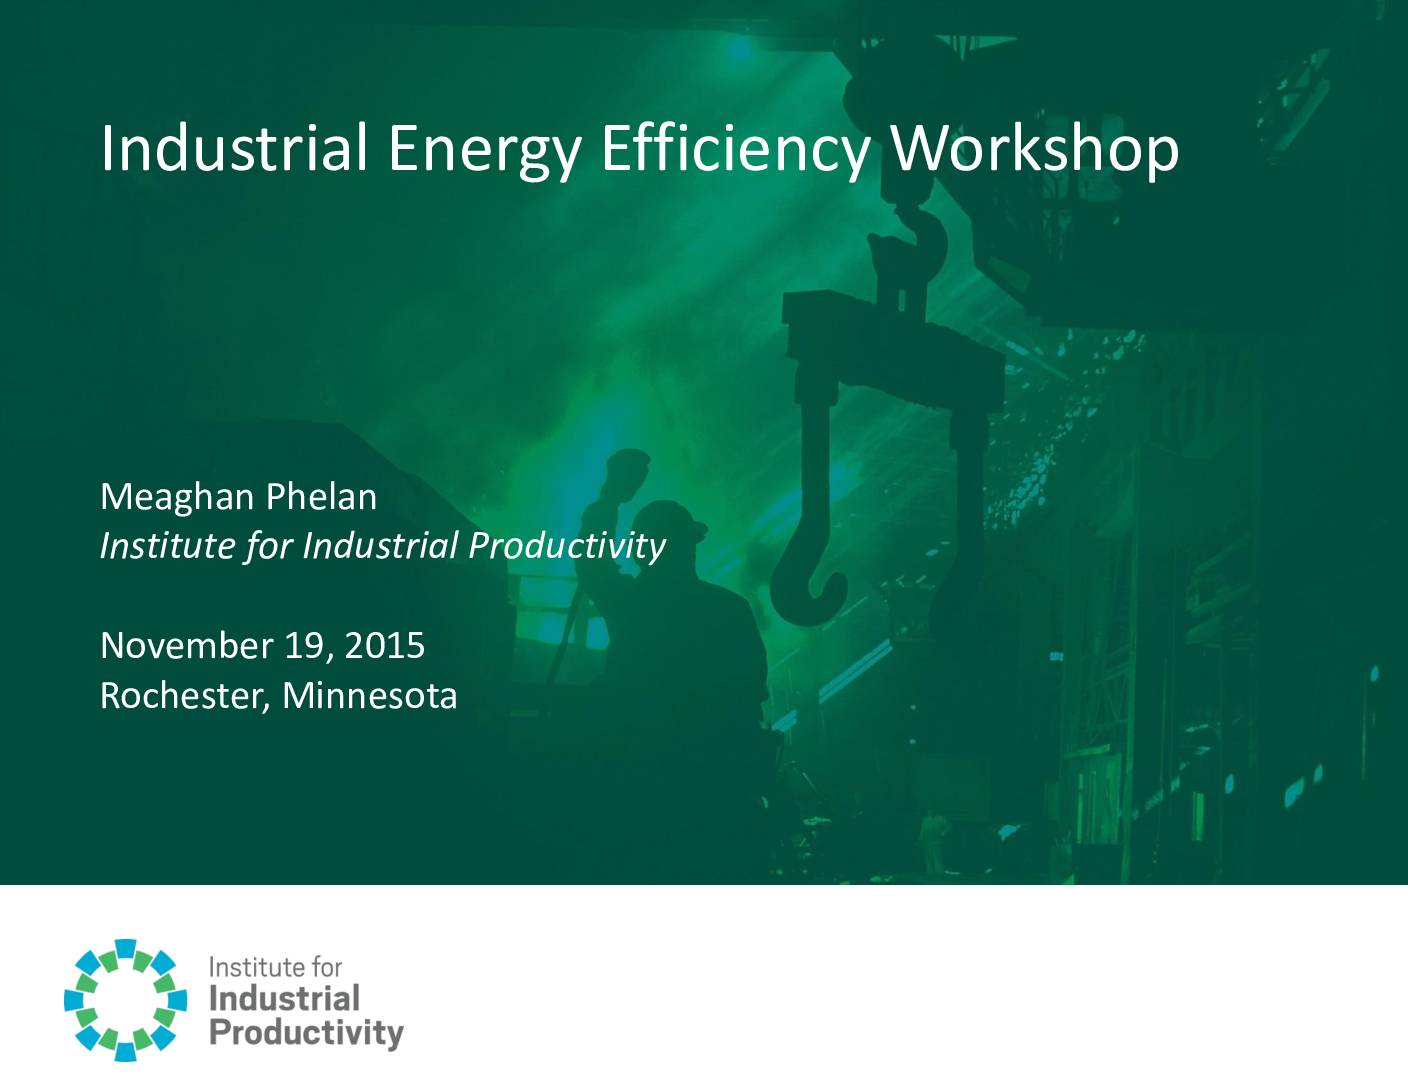 Industrial Energy Efficiency Workshop Presentation